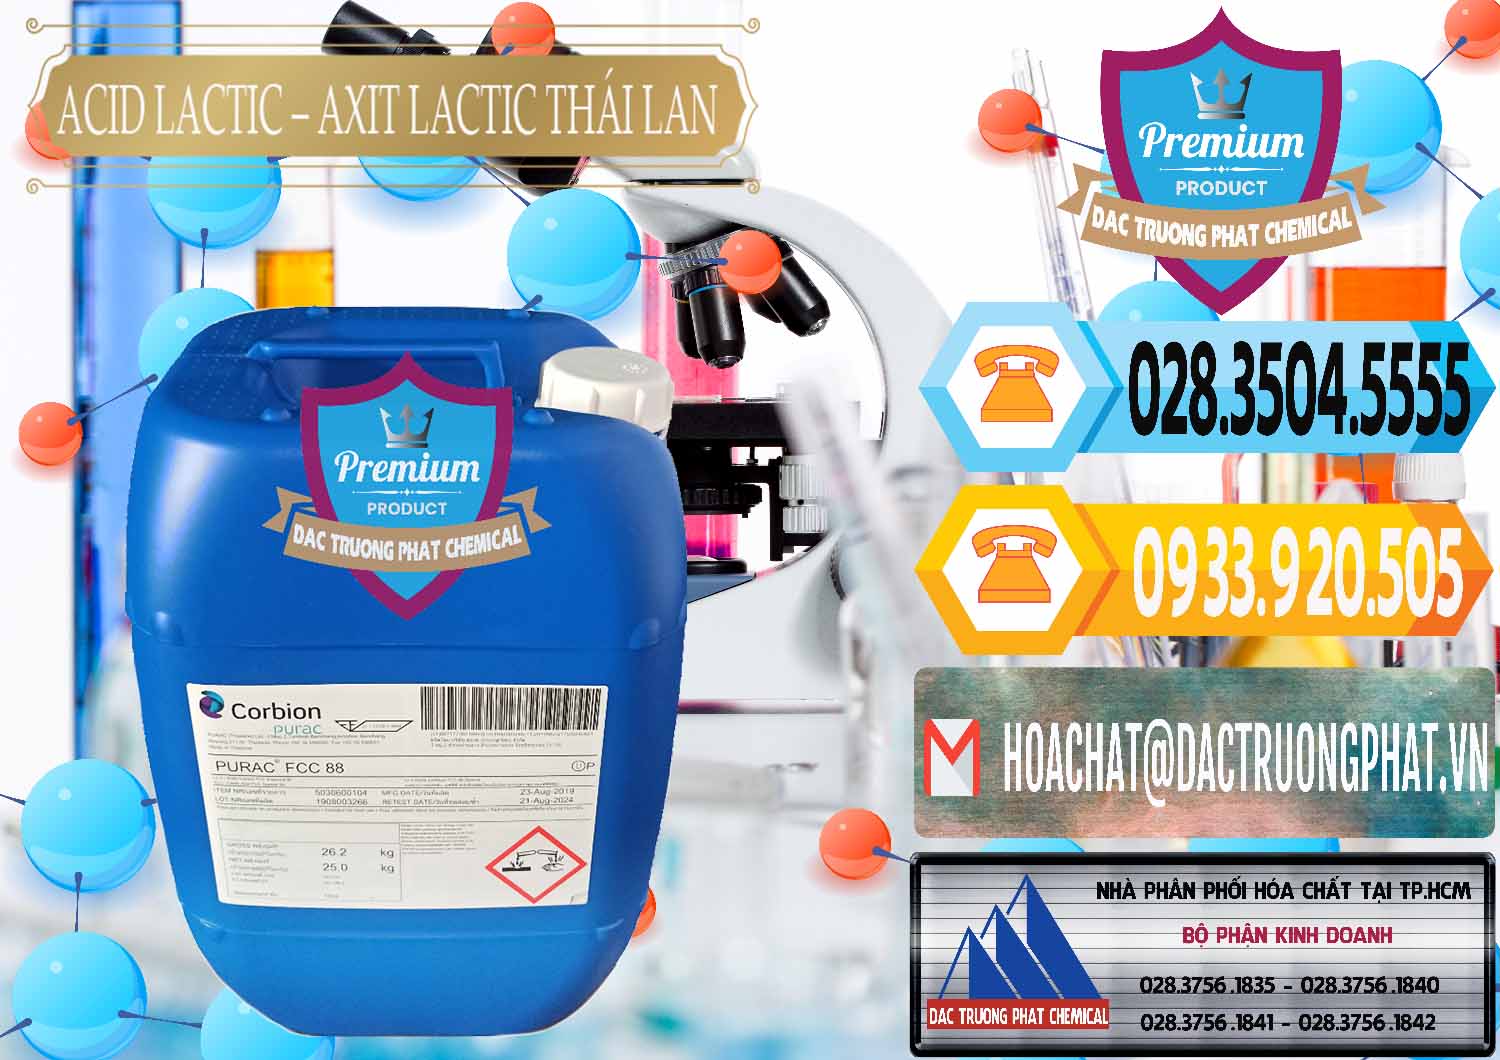 Chuyên kinh doanh và bán Acid Lactic – Axit Lactic Thái Lan Purac FCC 88 - 0012 - Phân phối - cung ứng hóa chất tại TP.HCM - hoachattayrua.net